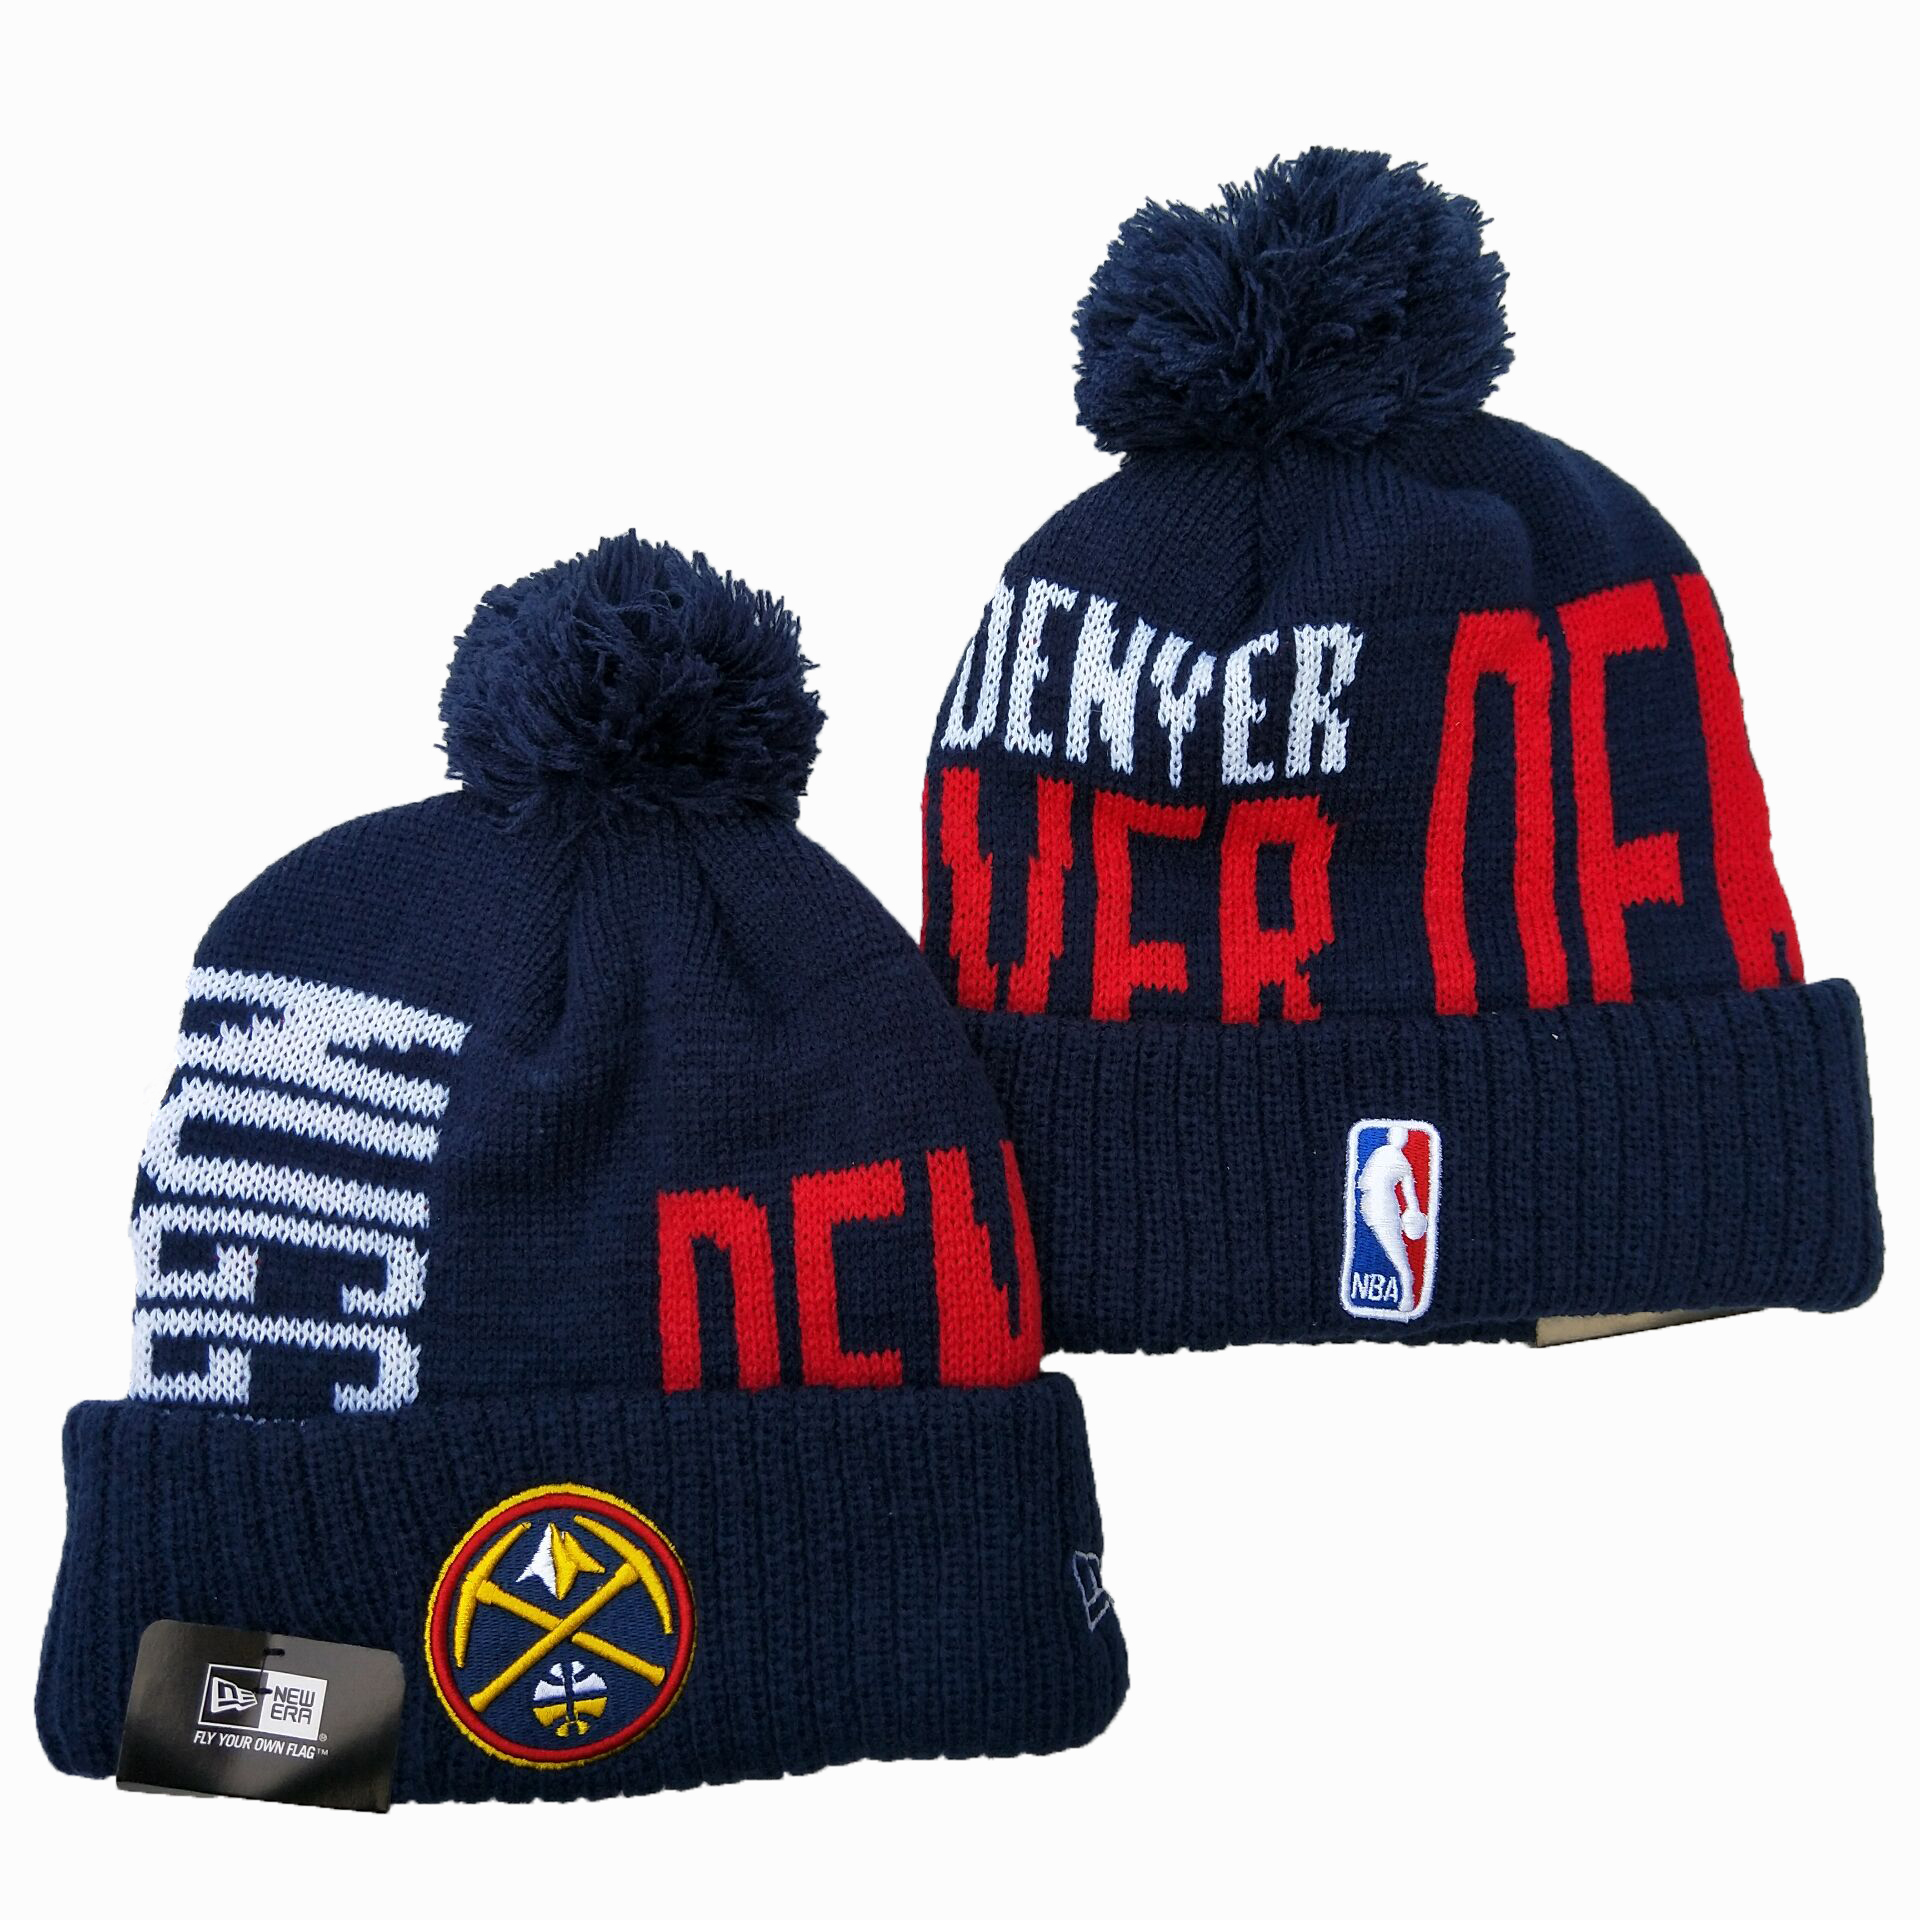 Denver Nuggets Knit Hats 001